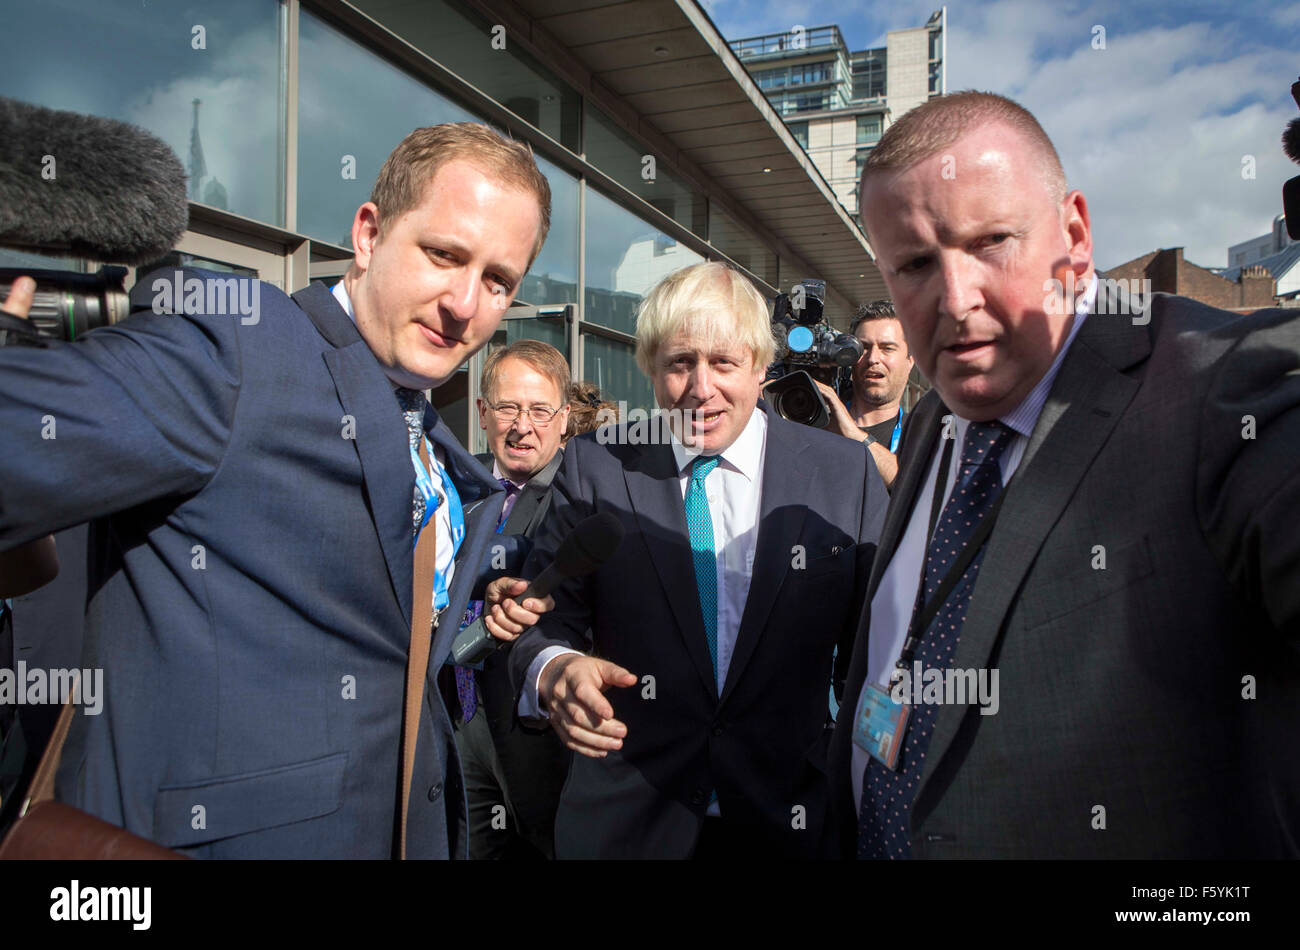 Congrès du Parti conservateur à Manchester aujourd'hui (mardi 6 octobre) Maire de Londres Boris Johnson arrive Banque D'Images